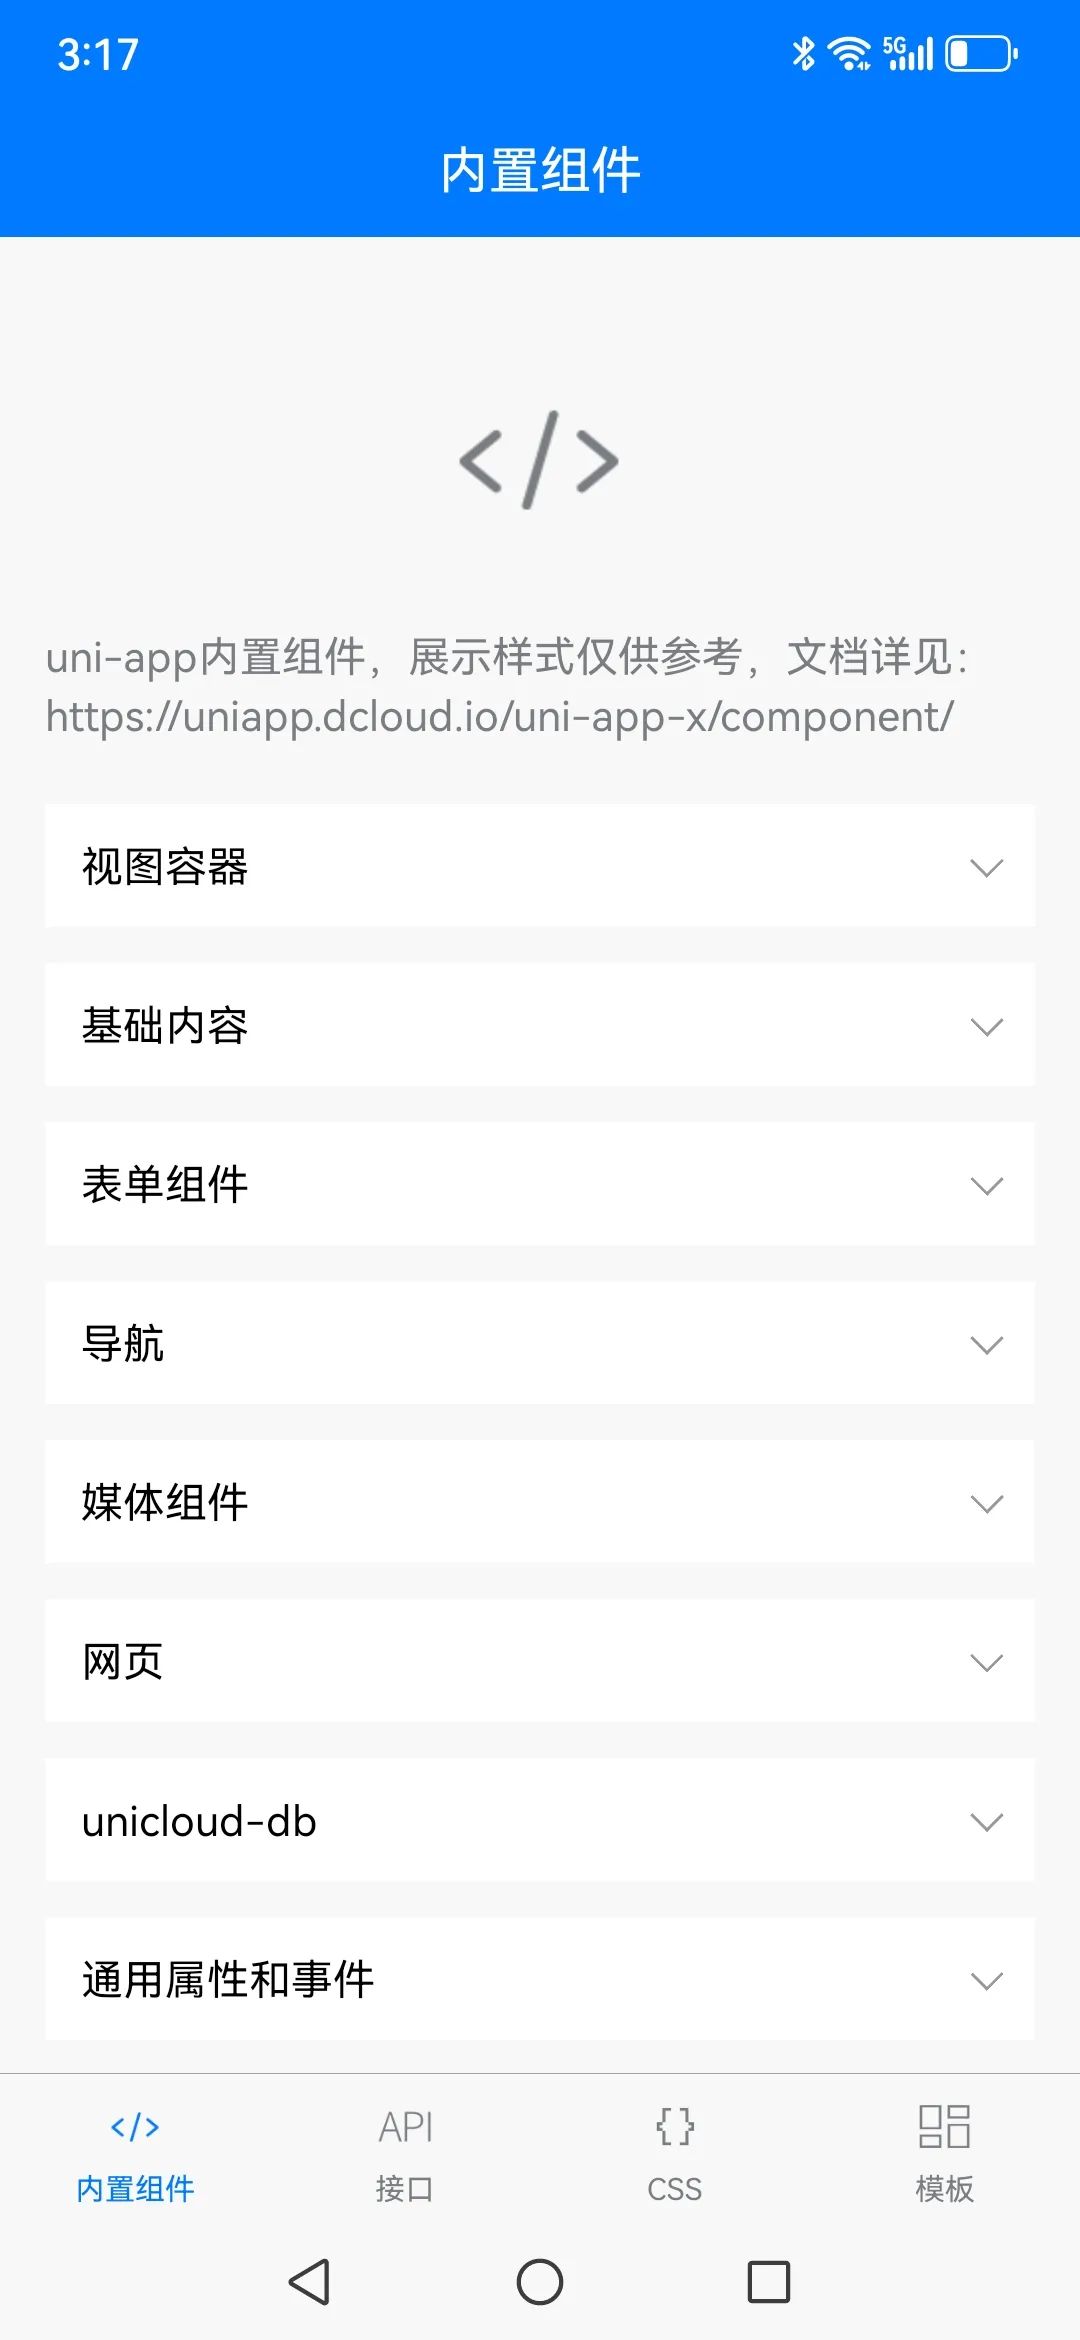 欢迎使用uni-app x，一个纯原生的Android App开发工具